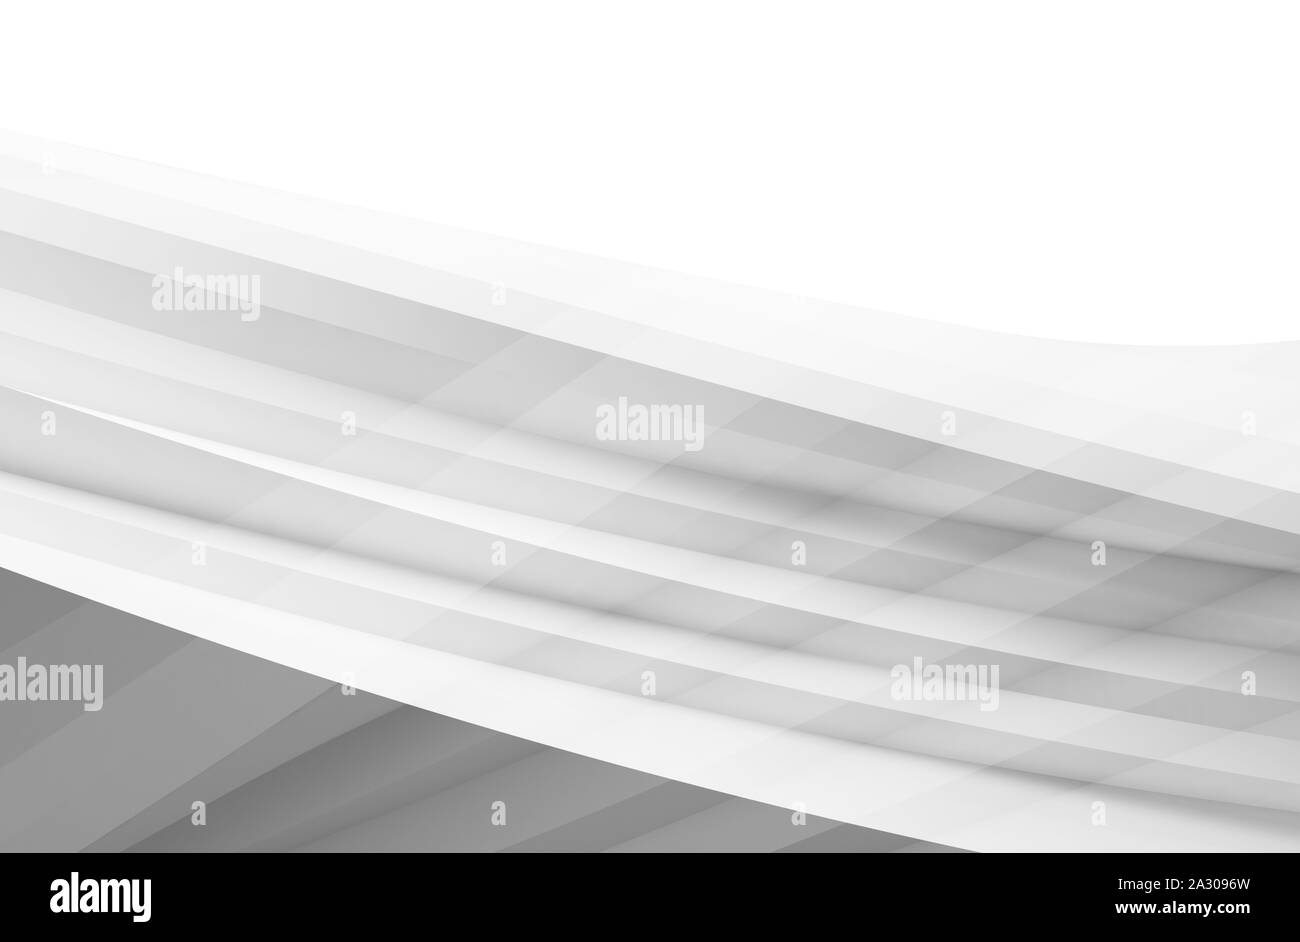 Abstract morbida struttura a spirale, forma di elica frammento isolato su sfondo bianco, rendering 3D illustrazione Foto Stock